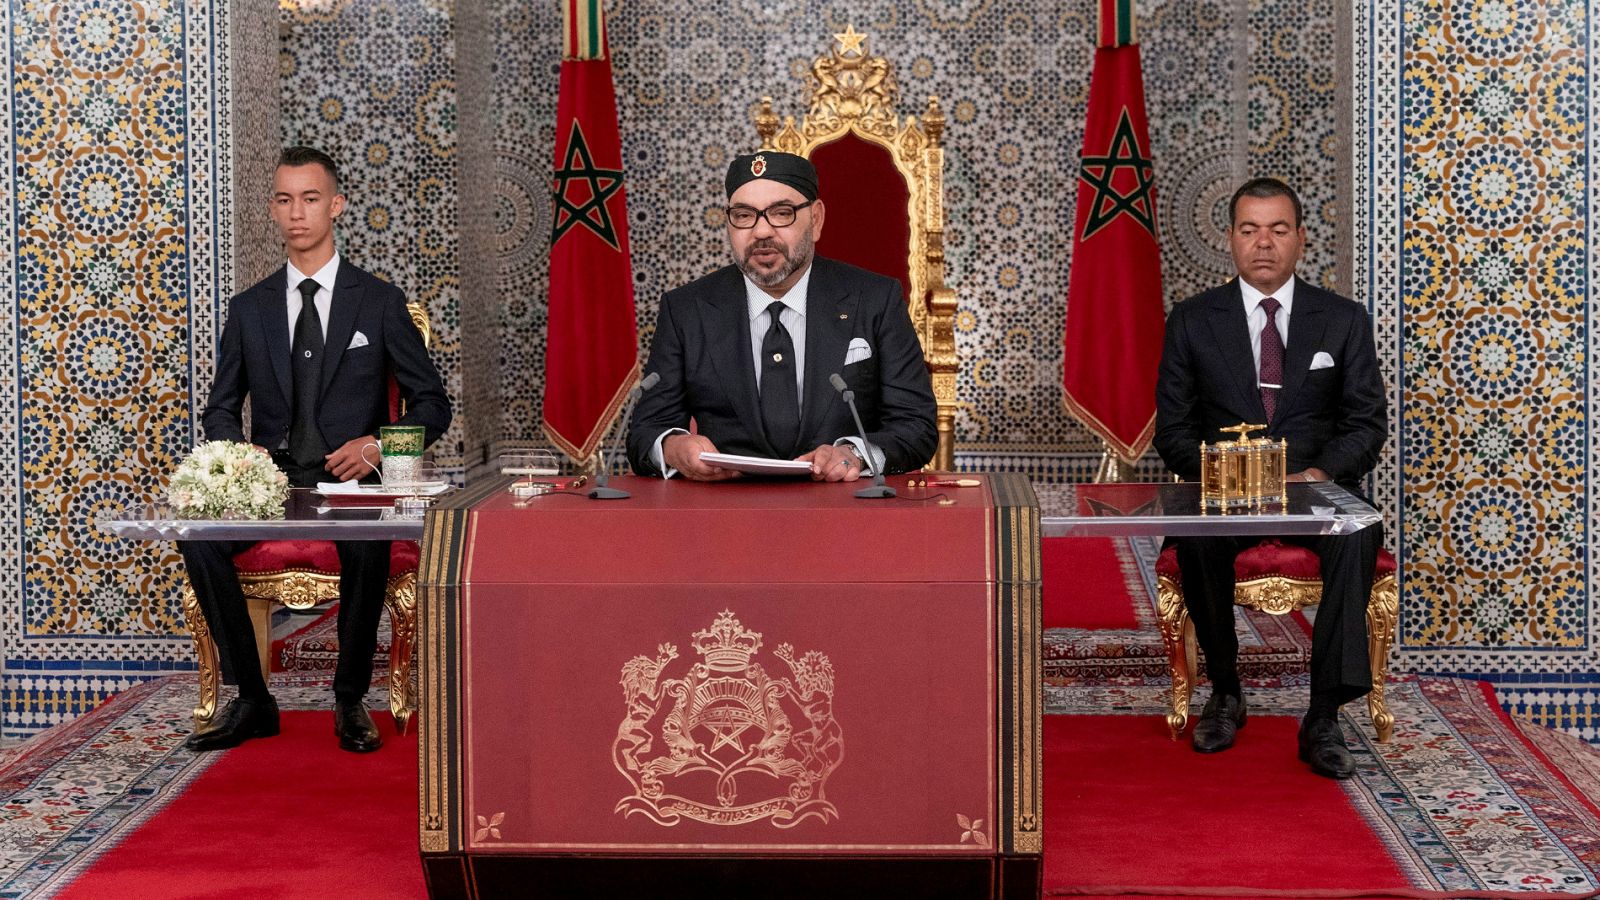 Mohamed VI celebra el 20 aniversario de su llegada al trono de Marruecos